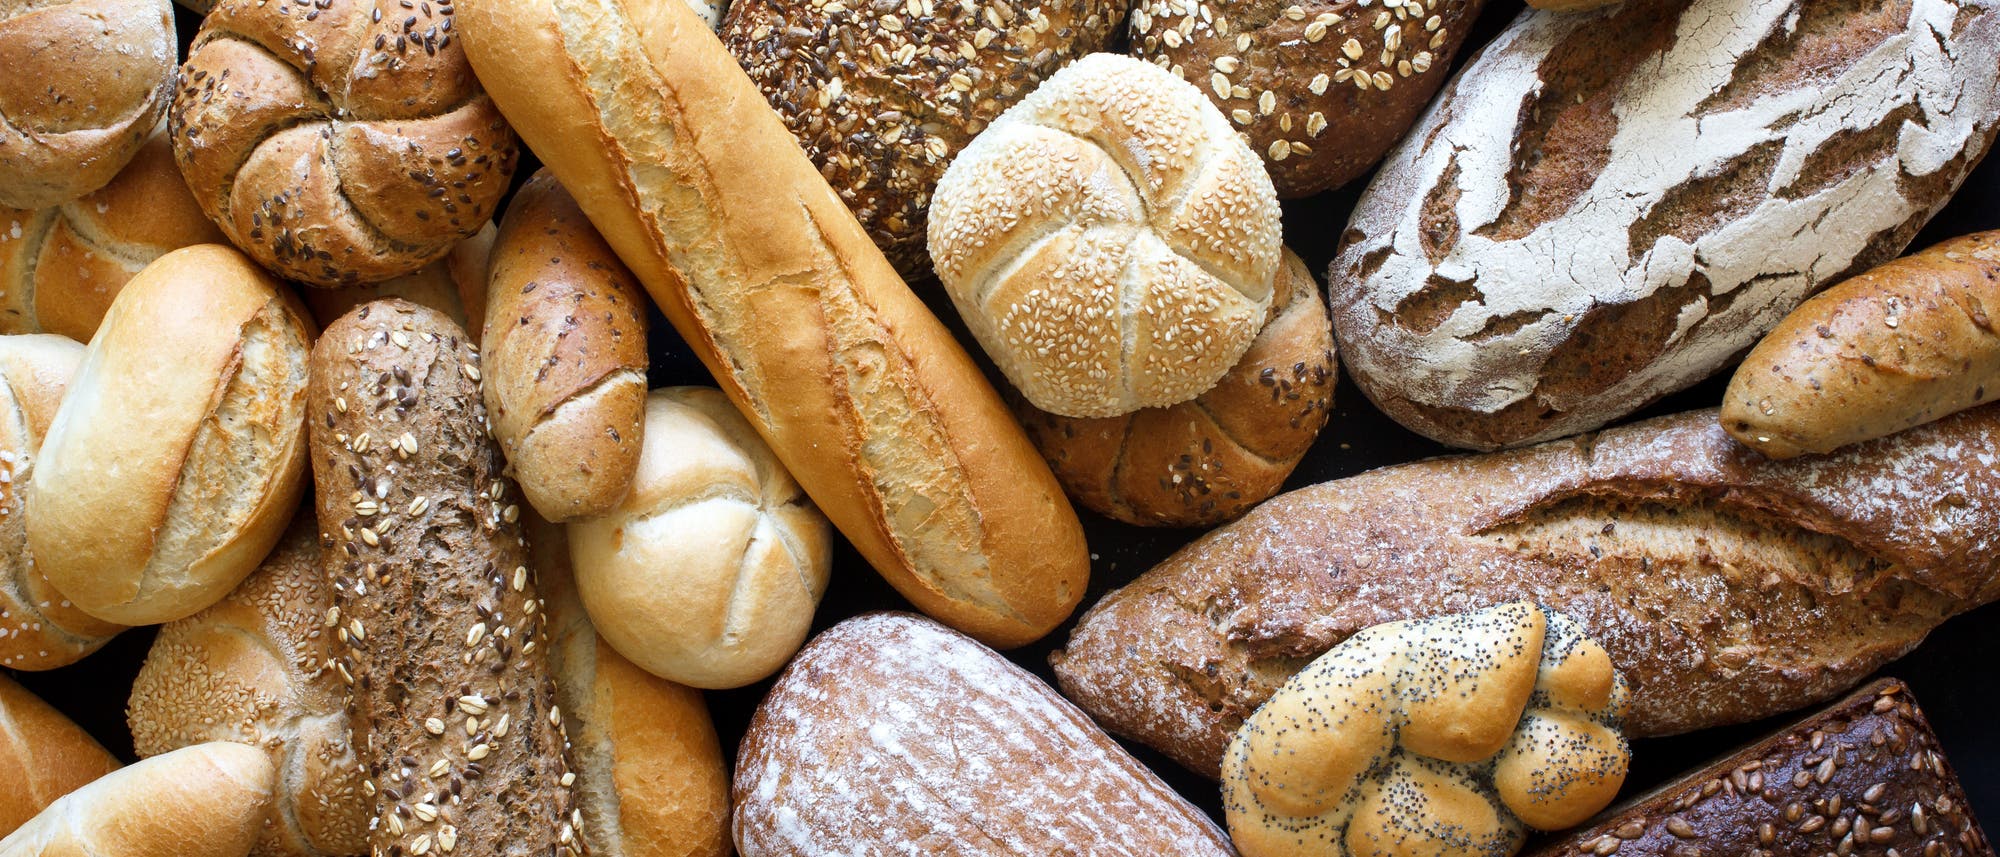 Brot und Brötchen in großer Vielfalt